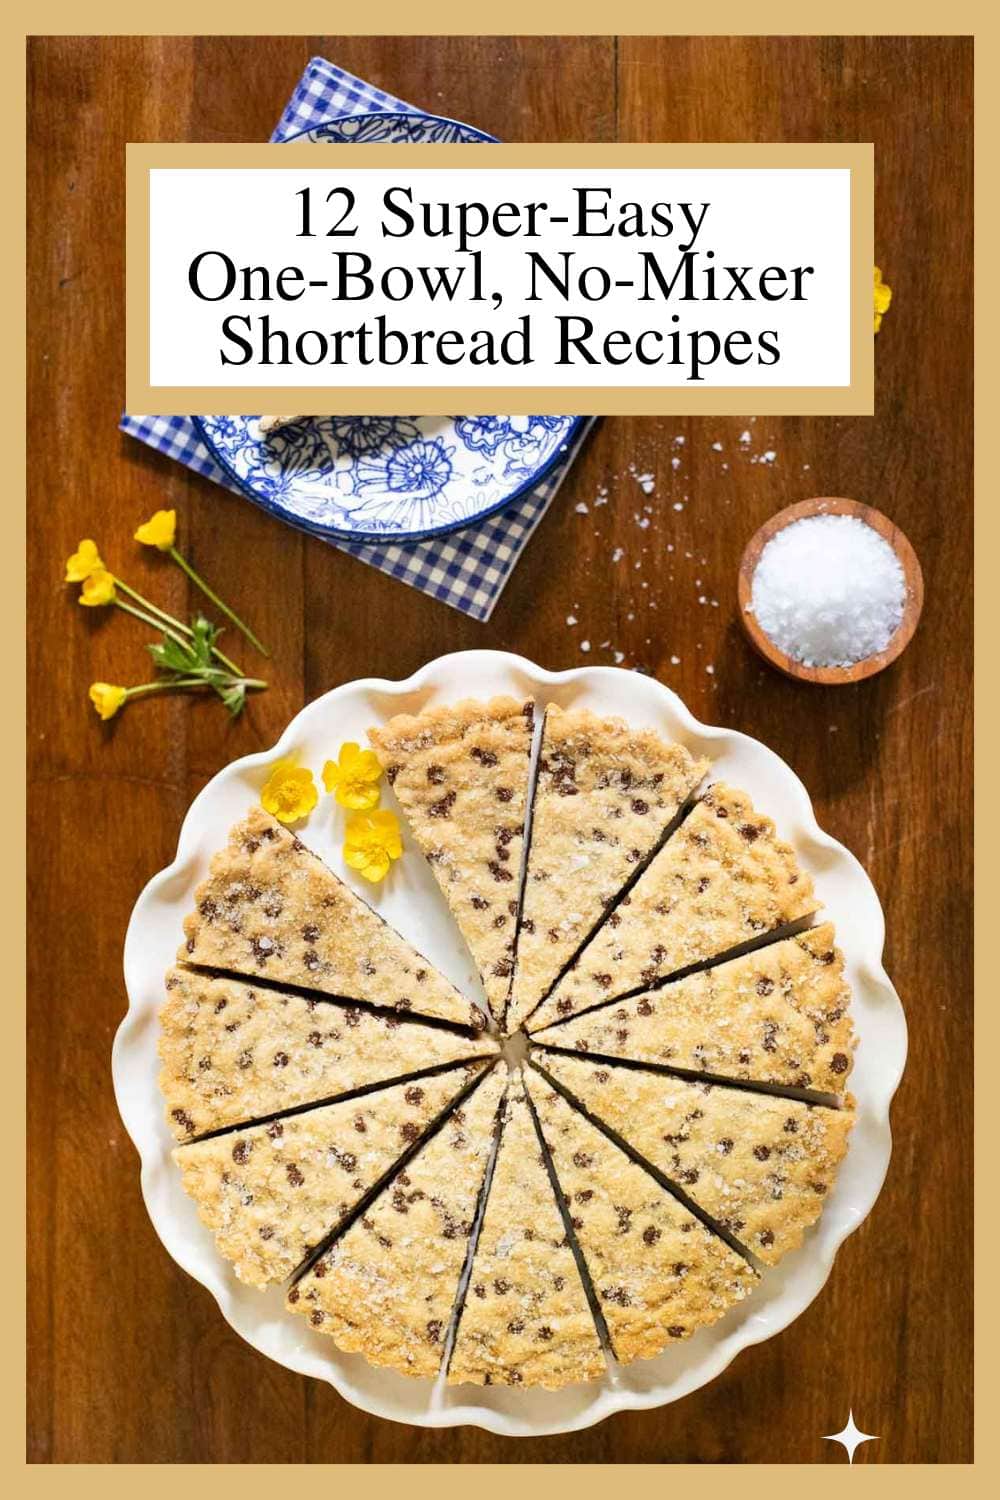 12 Super-Easy One-Bowl, No-Mixer Shortbread Recipes